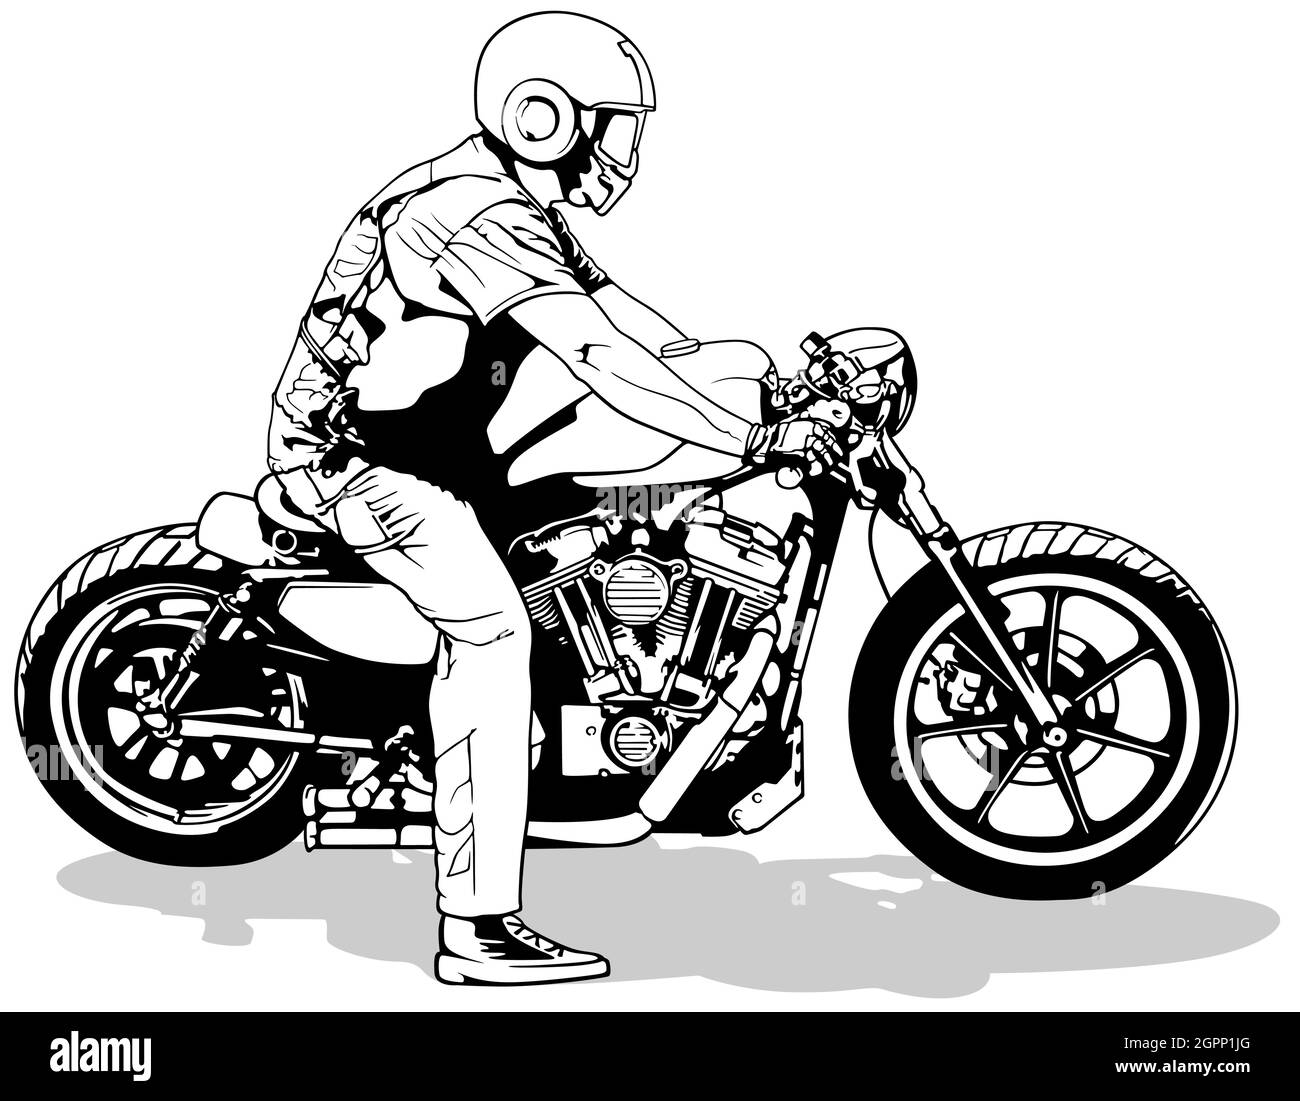 Motocycliste sur le dessin de moto Illustration de Vecteur